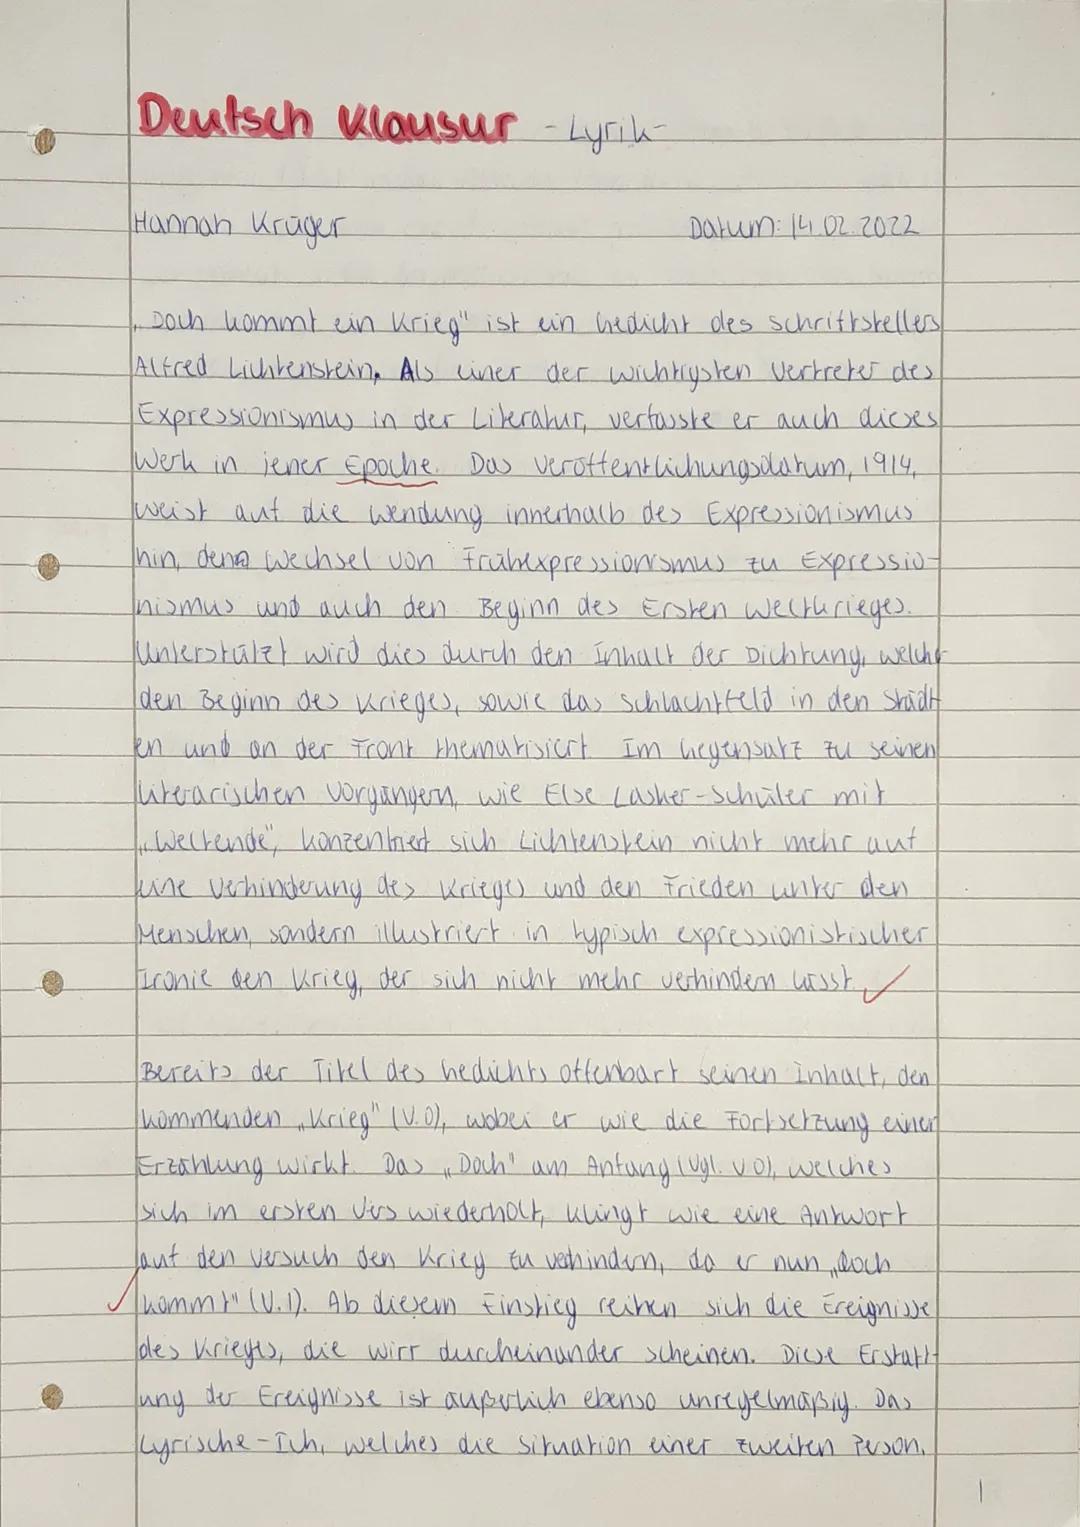 Klausur: Alfred Lichtenstein ,,Doch kommt ein Krieg" - Gedichtinterpretation
Hilfsmittel: Duden
Arbeitszeit: 90 Minuten
Aufgabenstellung:
1.